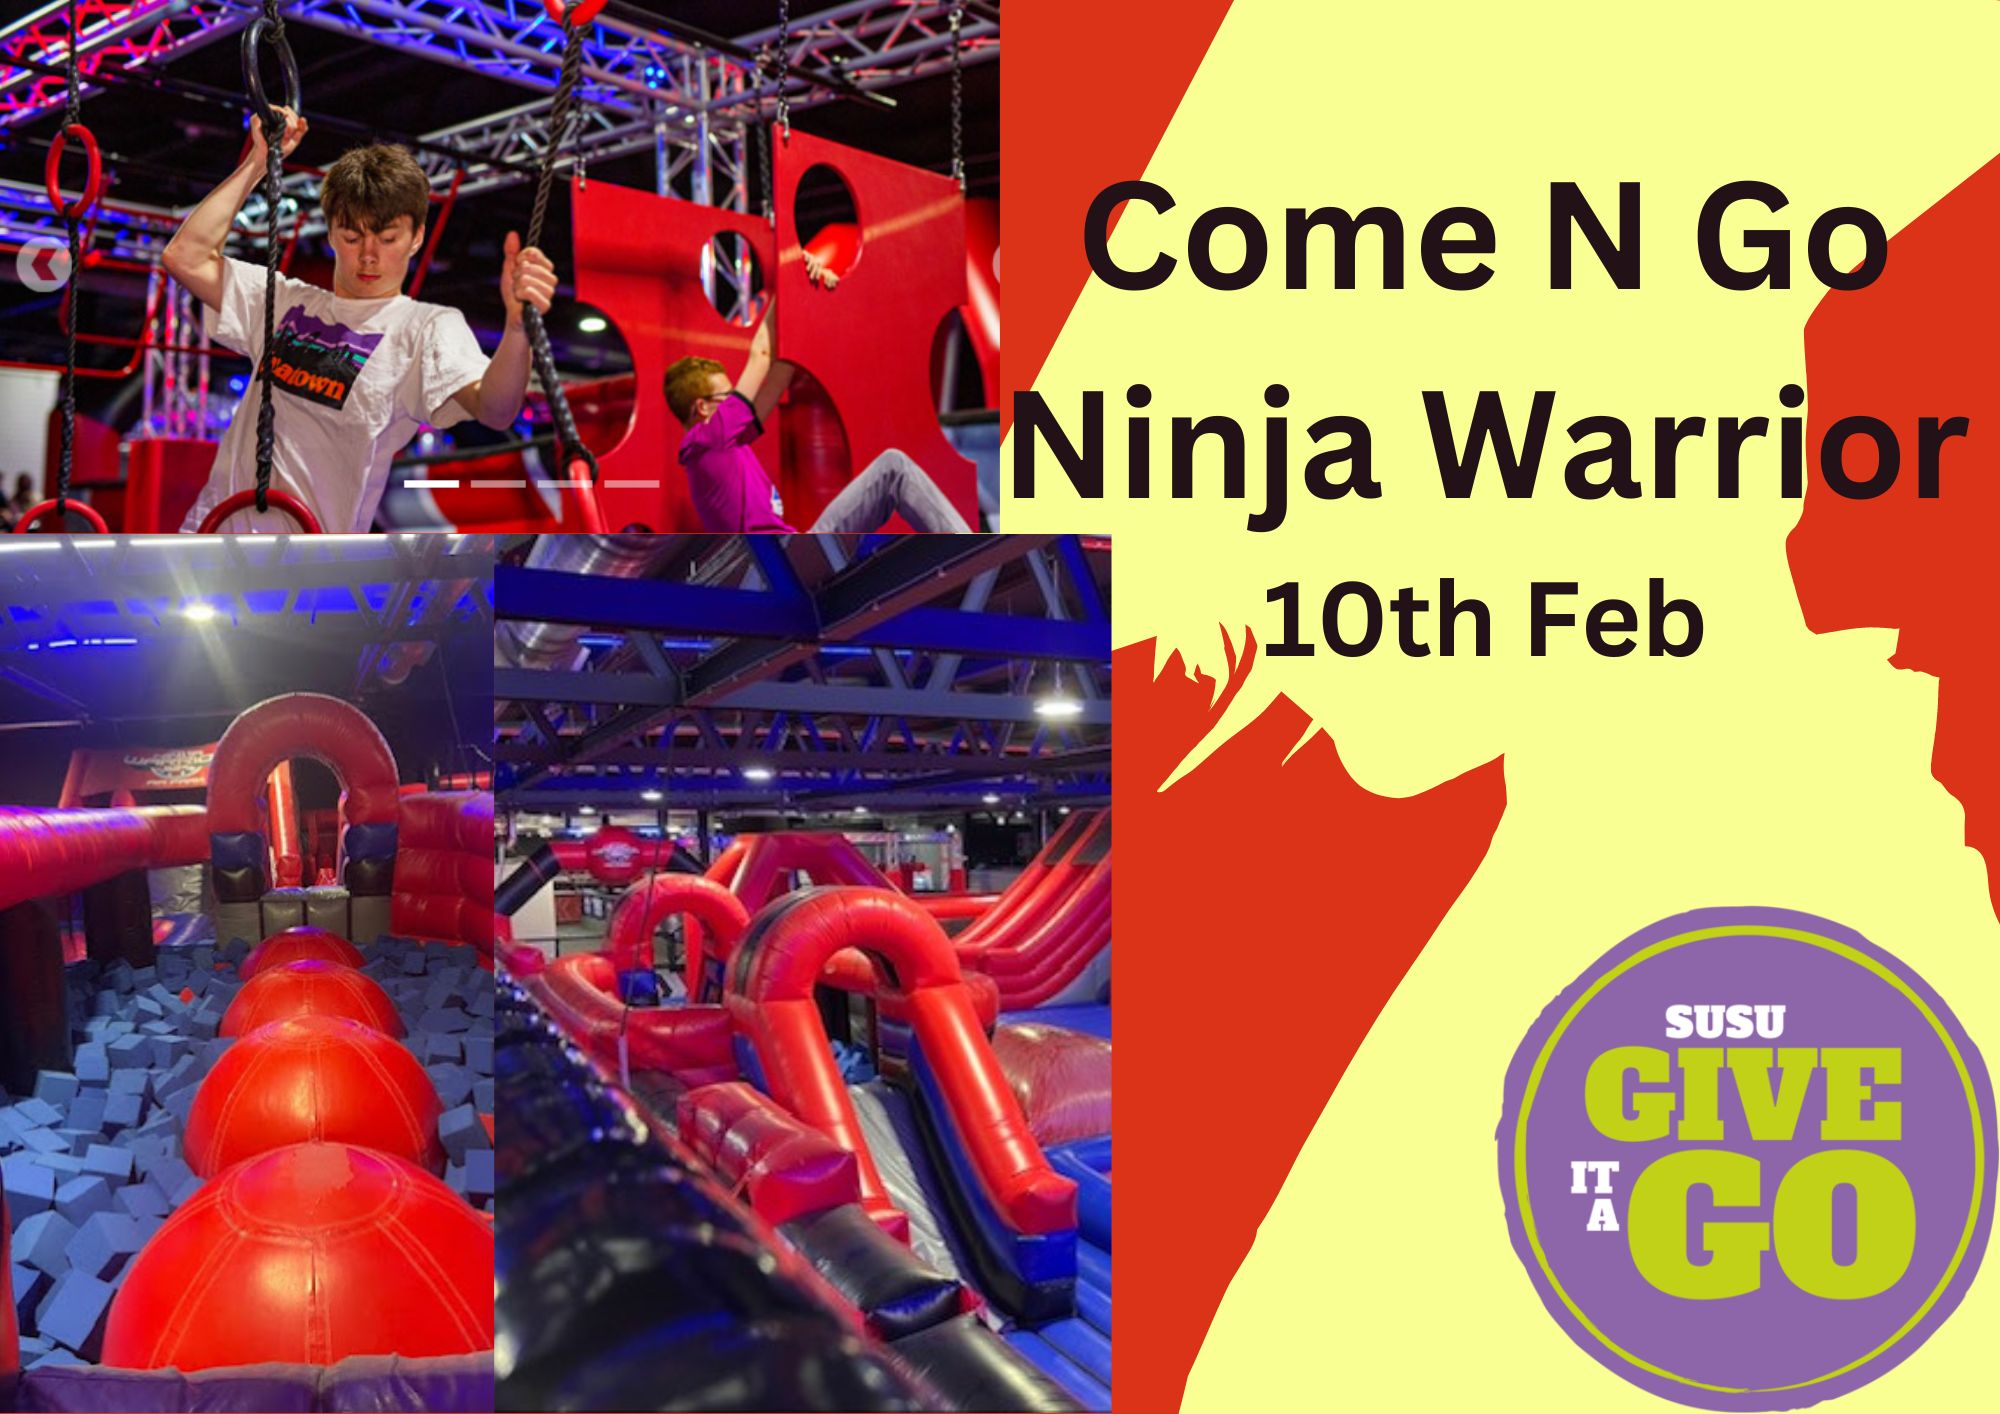 Come N Go: Ninja Warrior Adventure